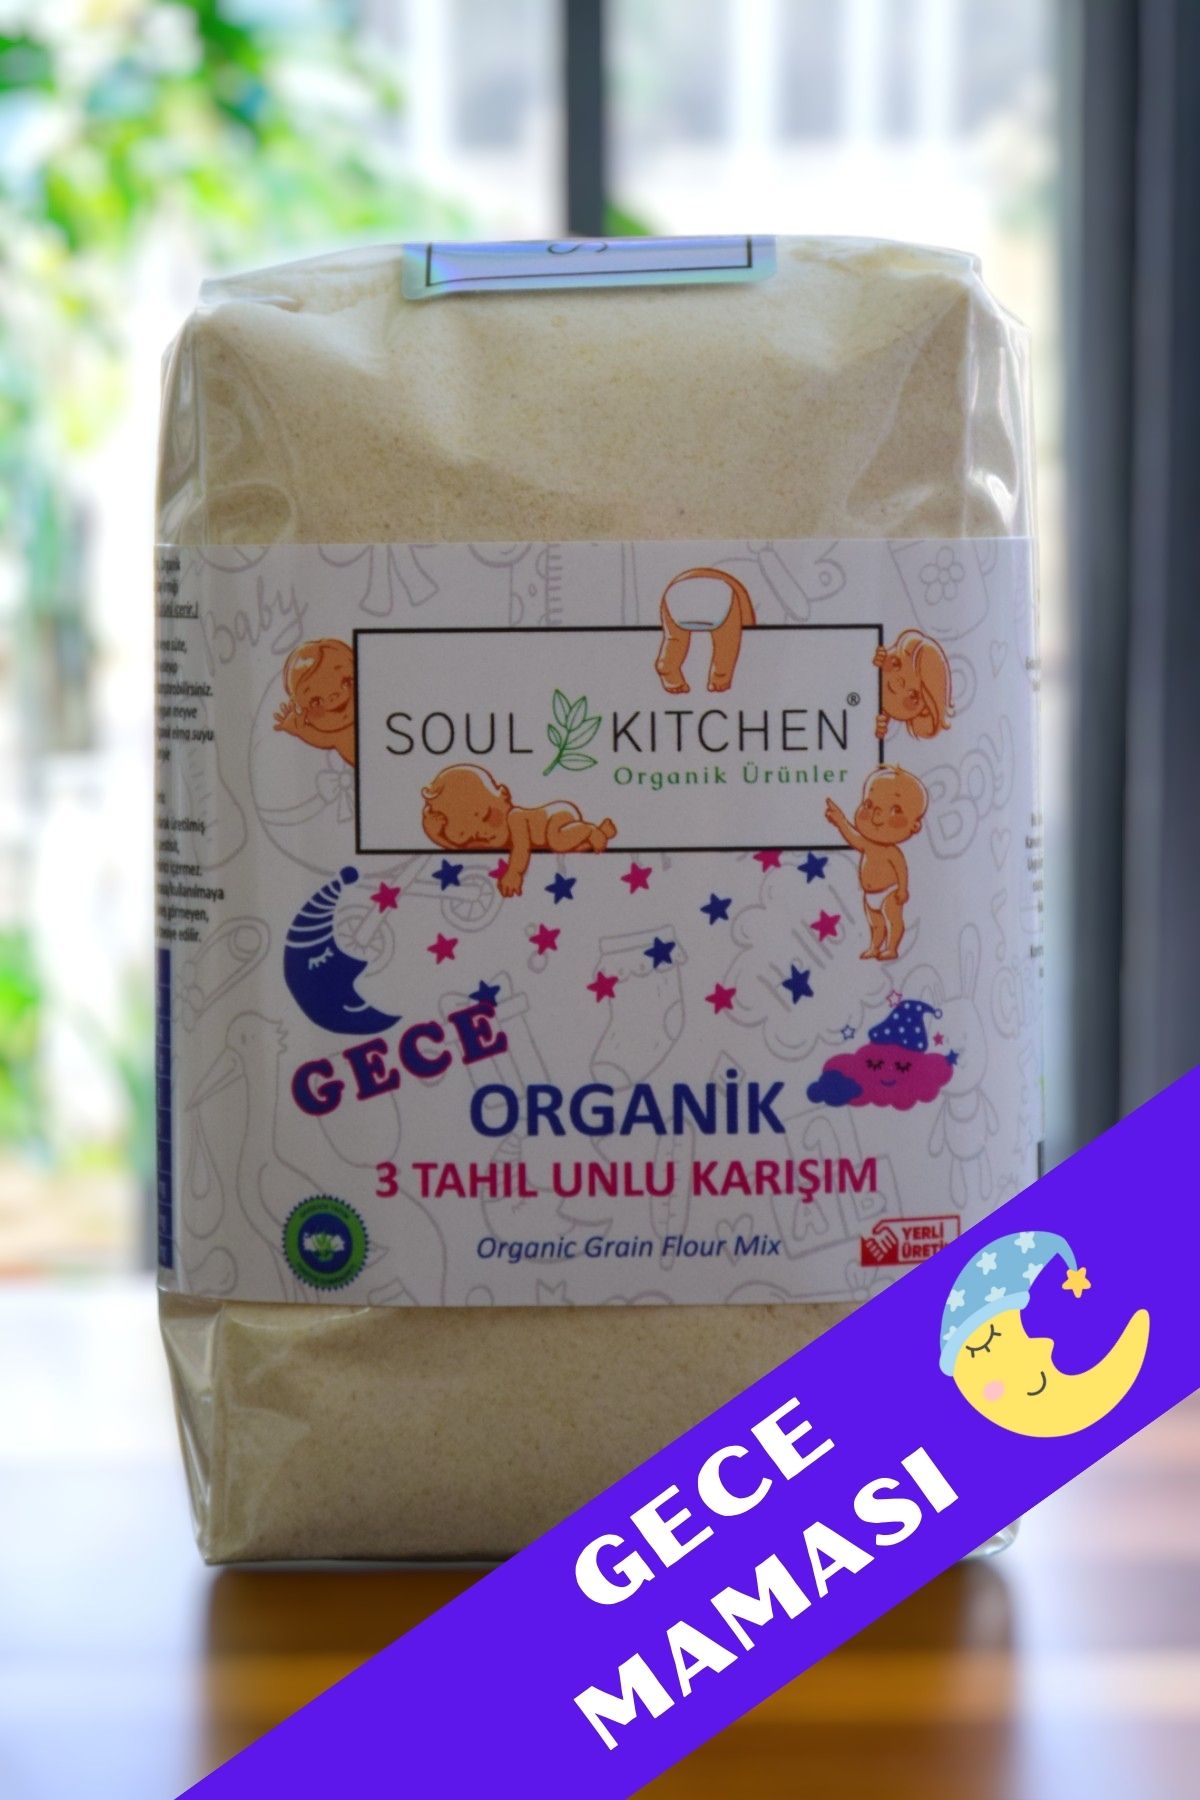 Soul Kitchen Organik Ürünler Organik Bebek Gece Maması 3 Tahıl Unlu Karışım 250gr